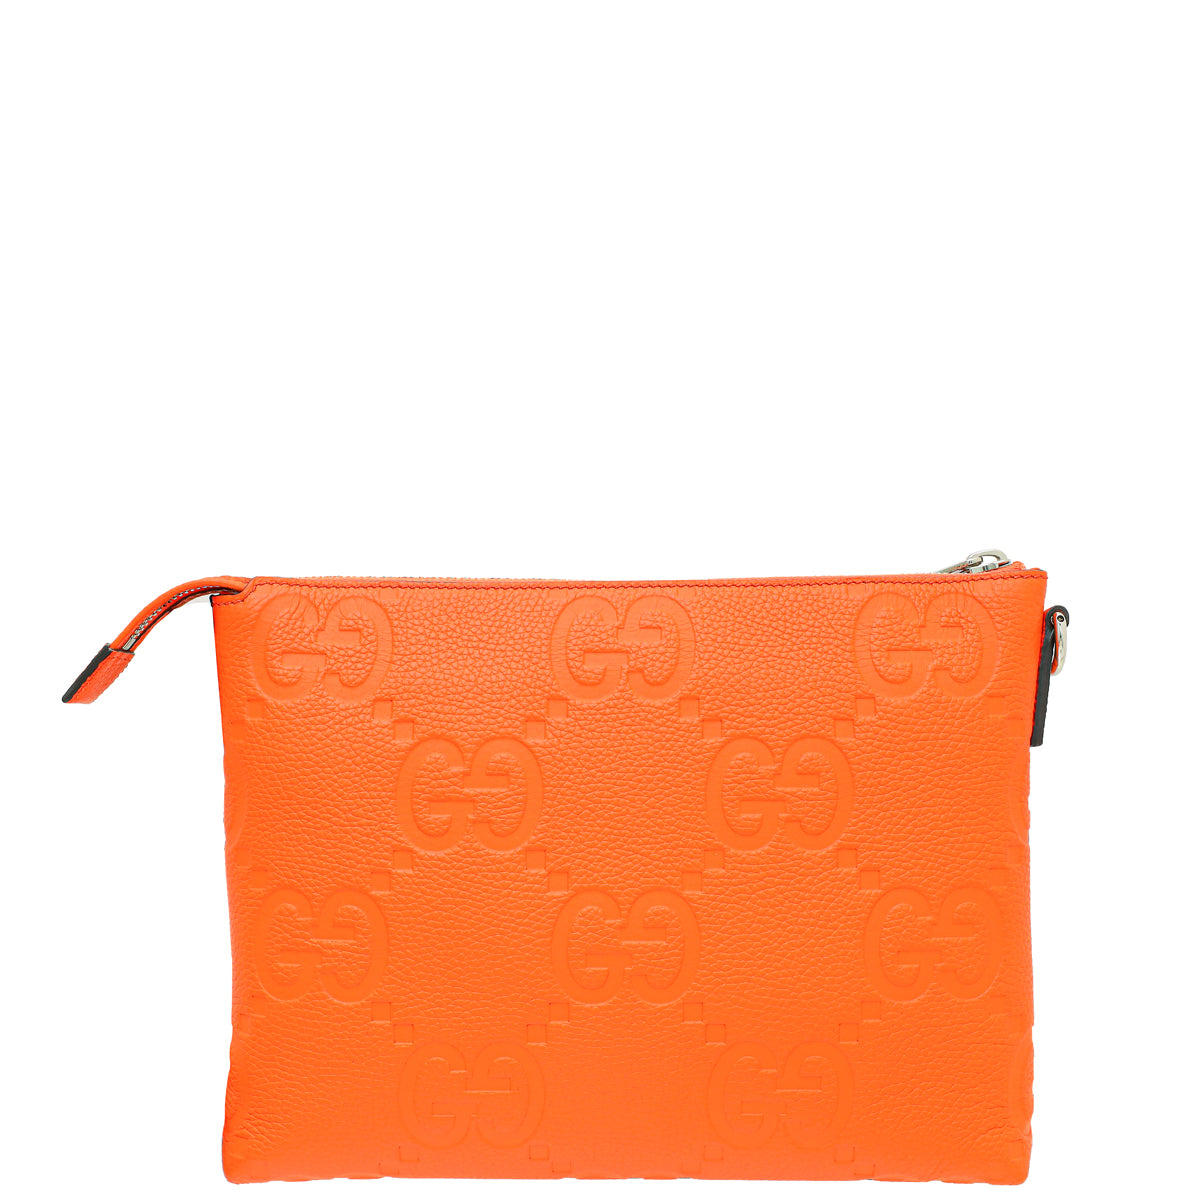 GUCCI Microguccissima Small Leather Crossbody Bag Orange 510289